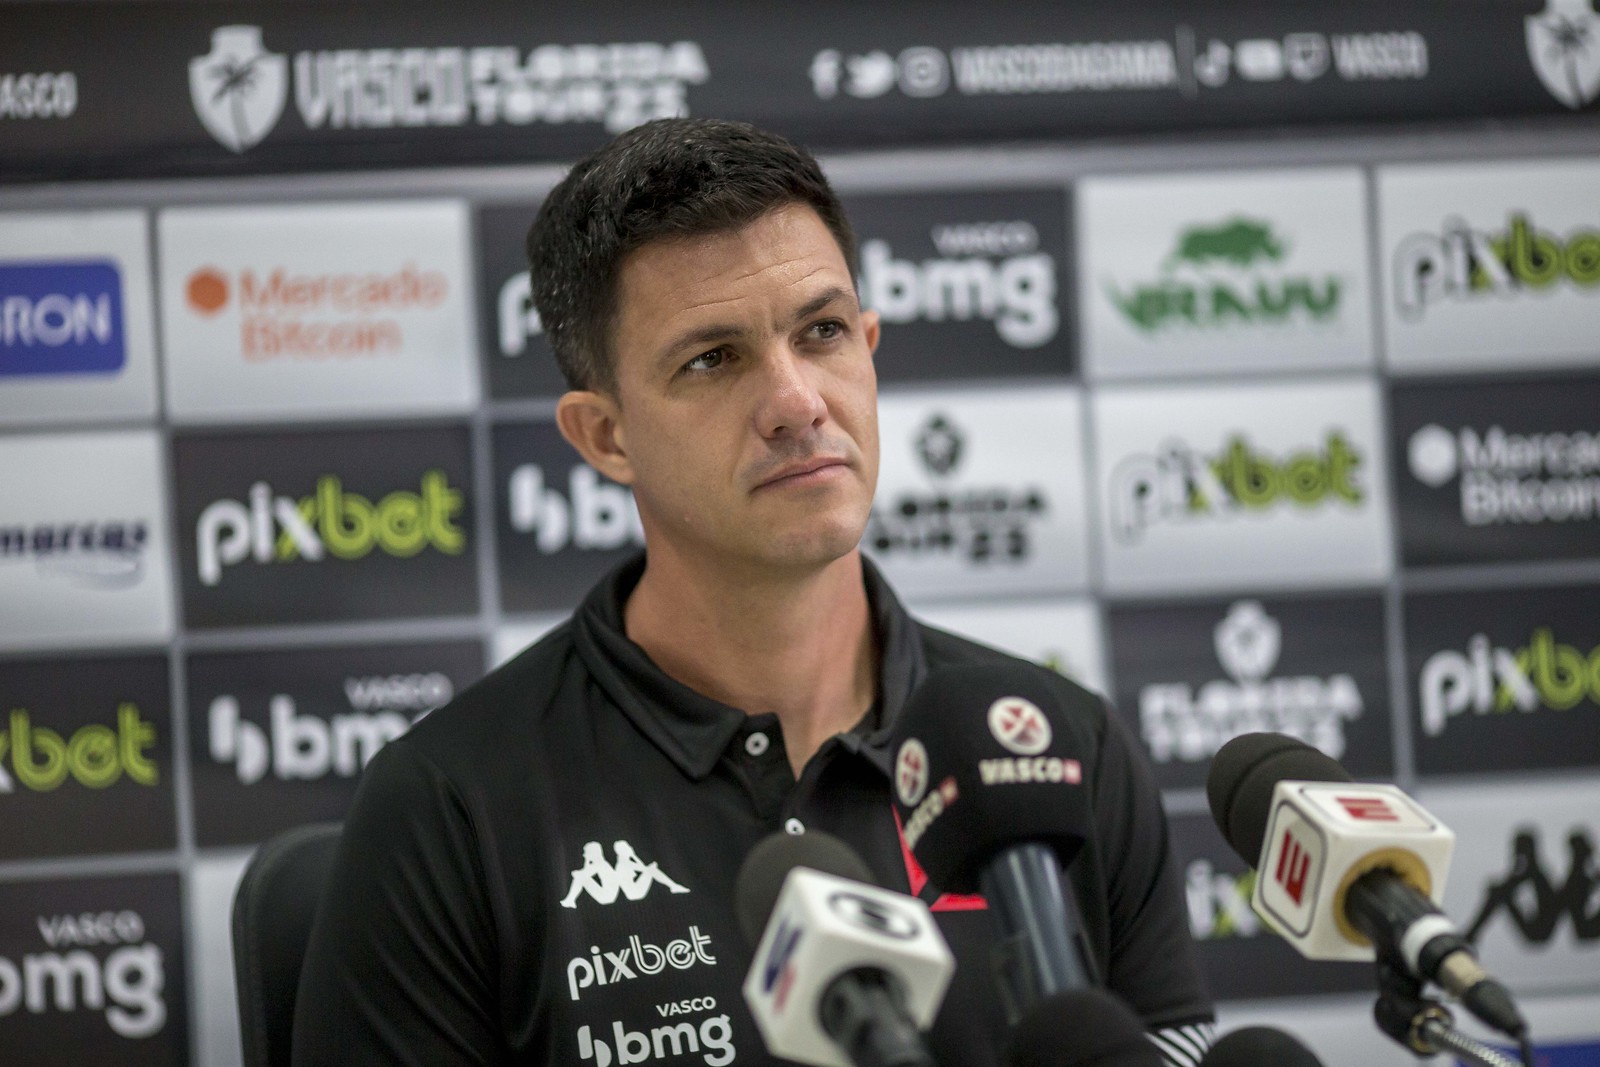 Treinador foi desligado do clube após a derrota para o Goiás na última quinta-feira (22). Além dele, o auxiliar técnico Maldonado e o preparador físico Gustavo Araújo também deixam o clube